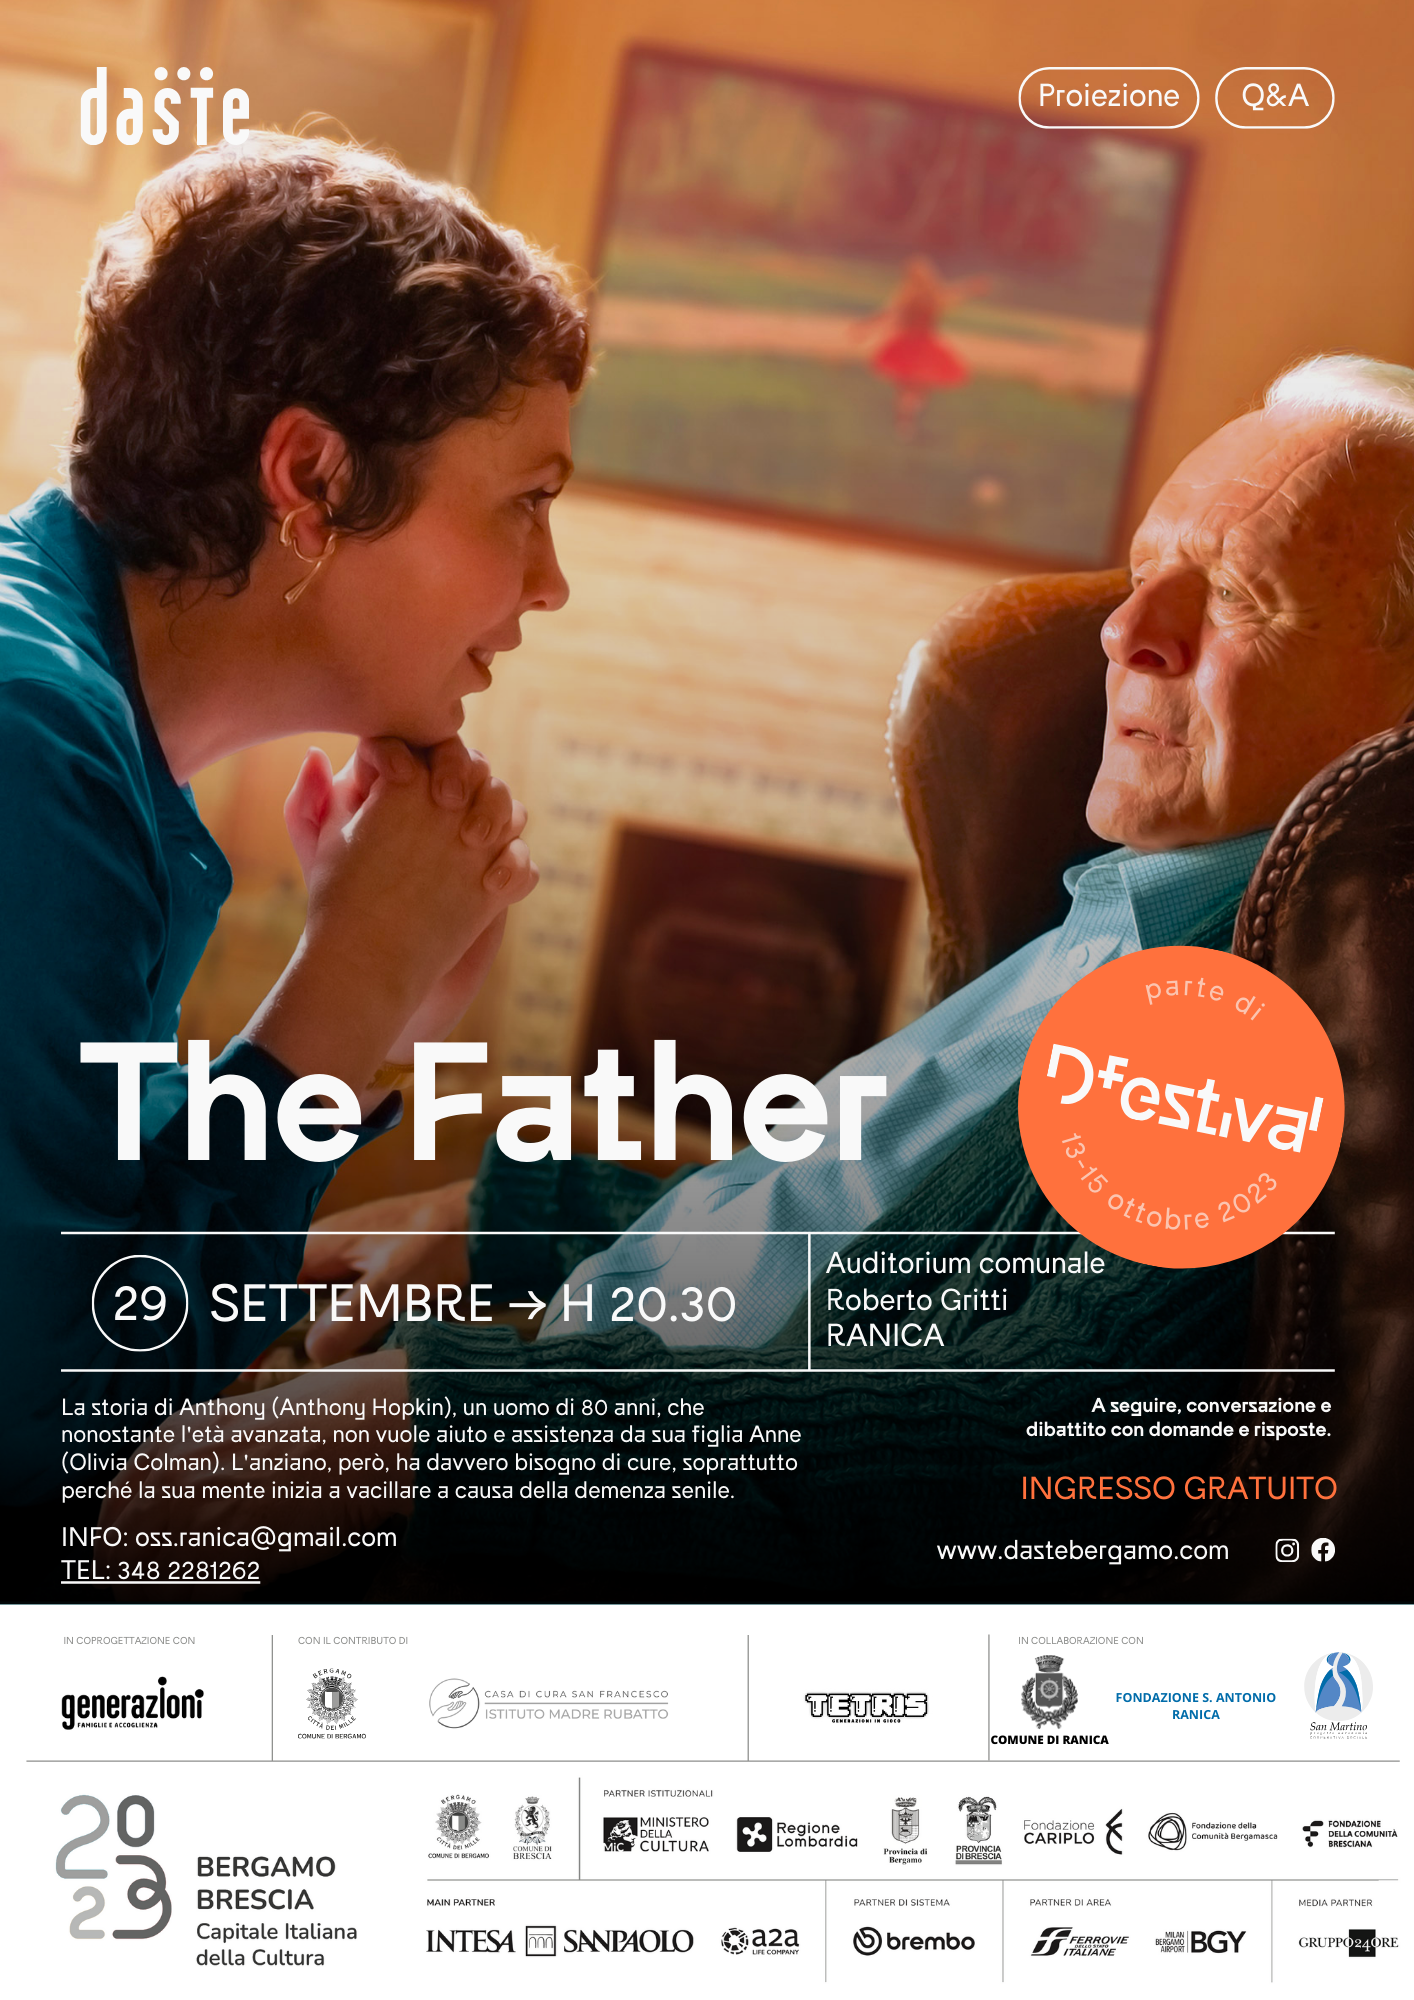 immagine 29 settembre ore 20.30 proiezione del film "The Father"